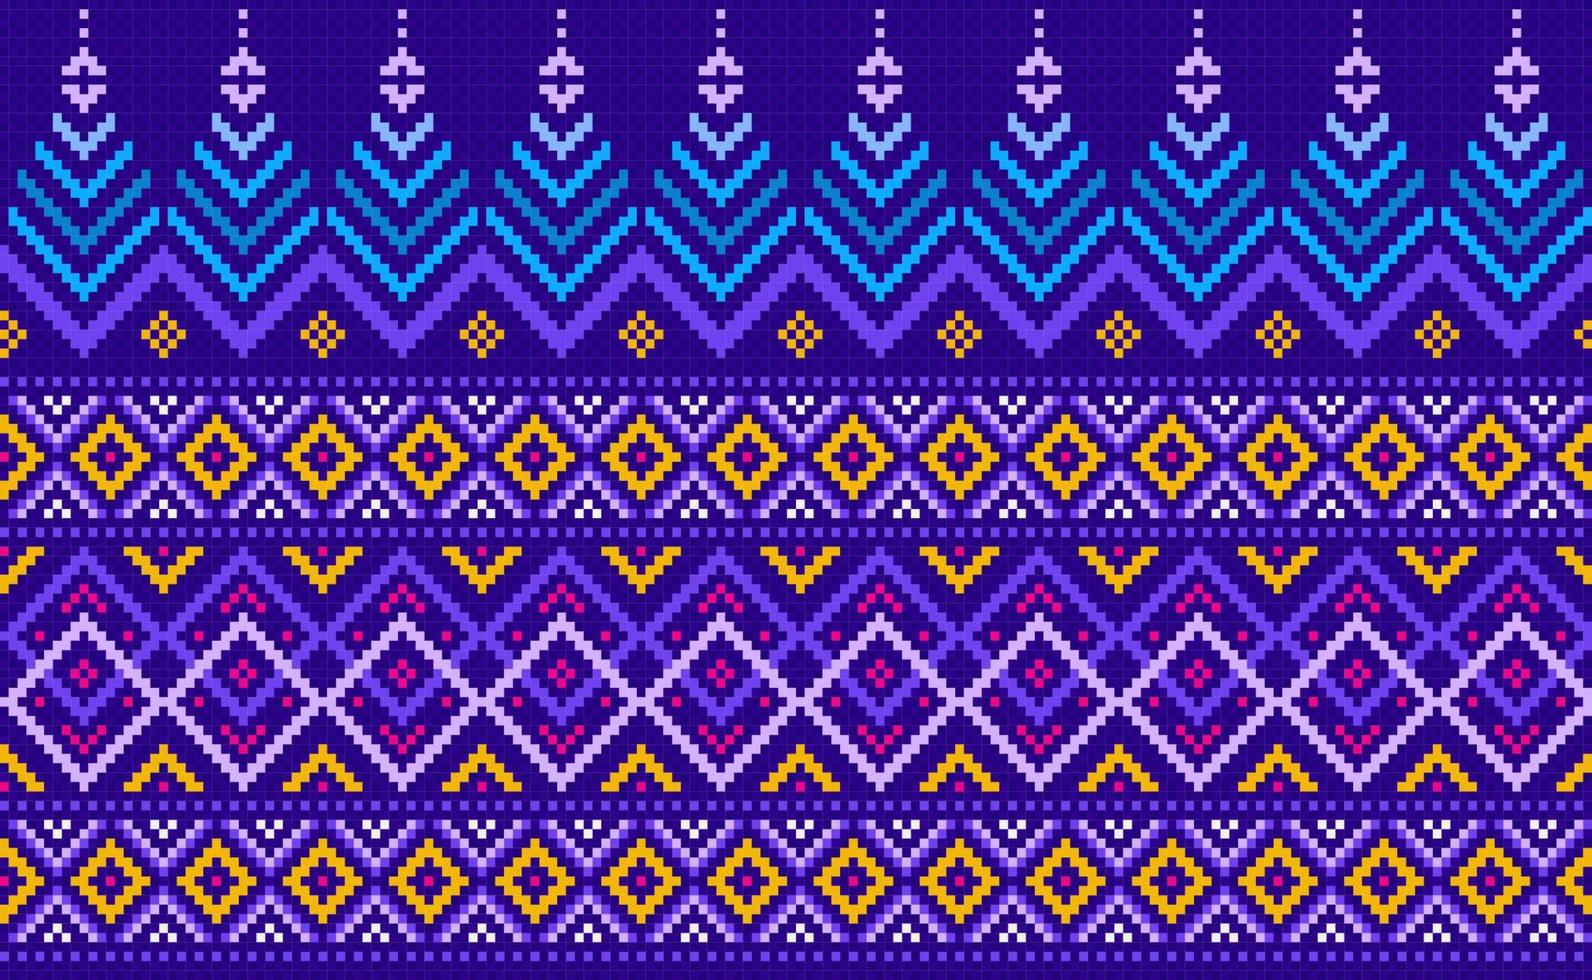 geometrisk etnisk mönster, vektor broderi utsmyckad bakgrund, blå och gul pixel retro sicksack- stil